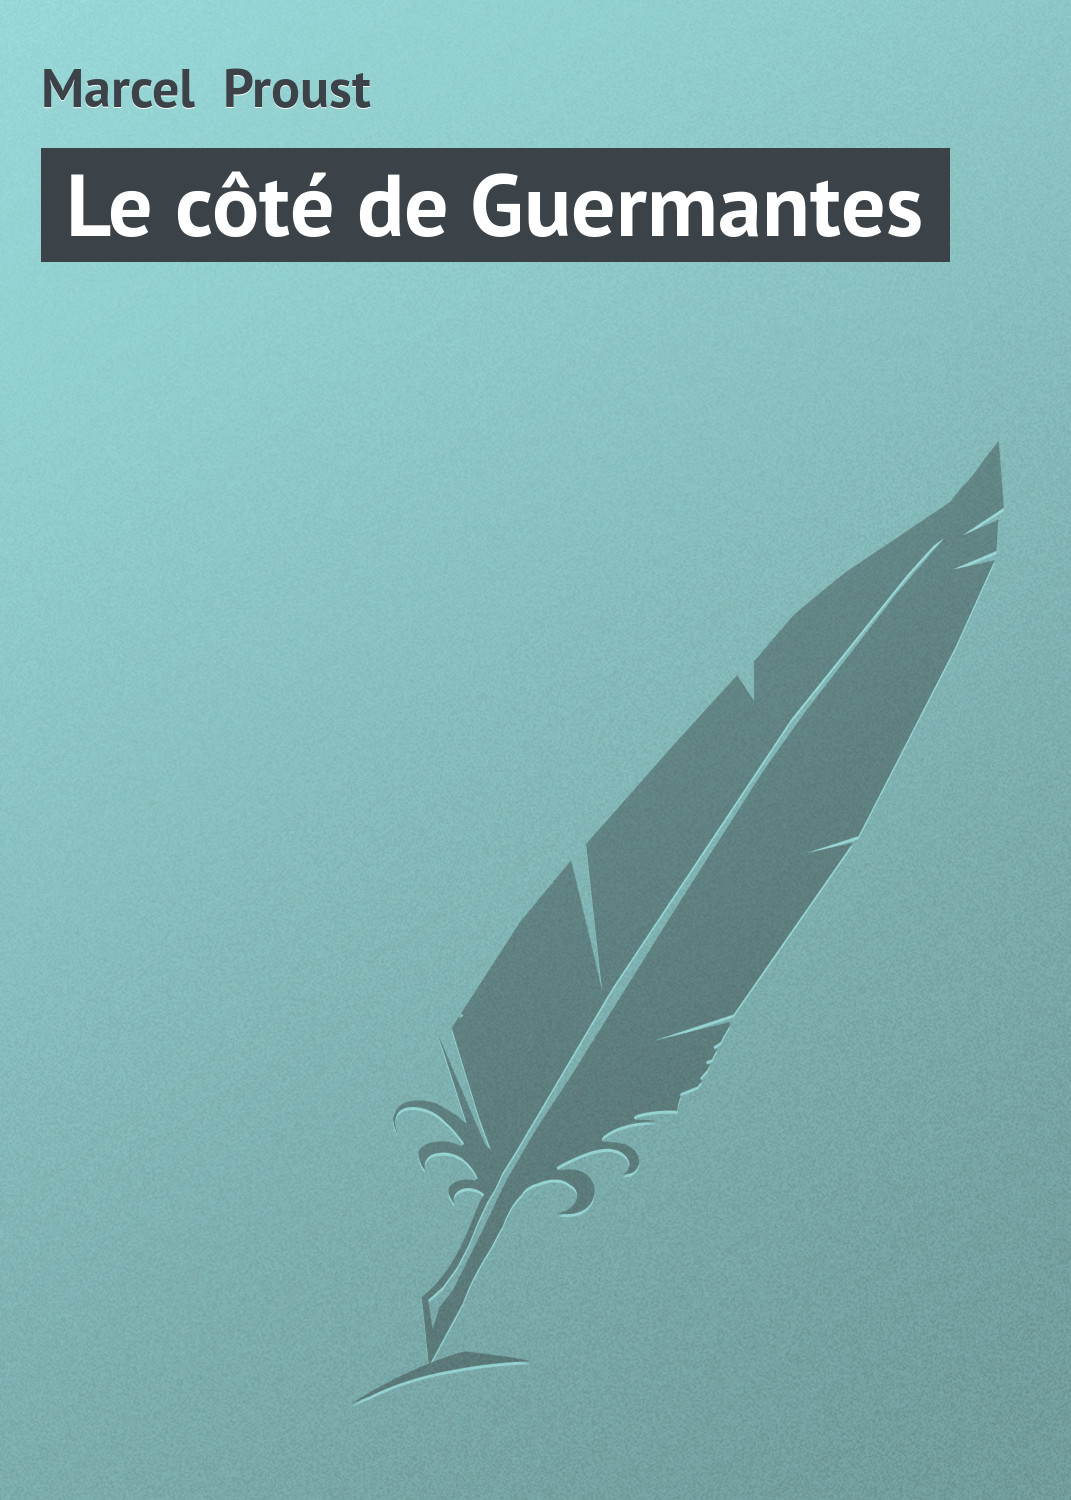 Книга Le côté de Guermantes из серии , созданная Marcel Proust, может относится к жанру Зарубежная старинная литература, Зарубежная классика. Стоимость электронной книги Le côté de Guermantes с идентификатором 21104502 составляет 5.99 руб.